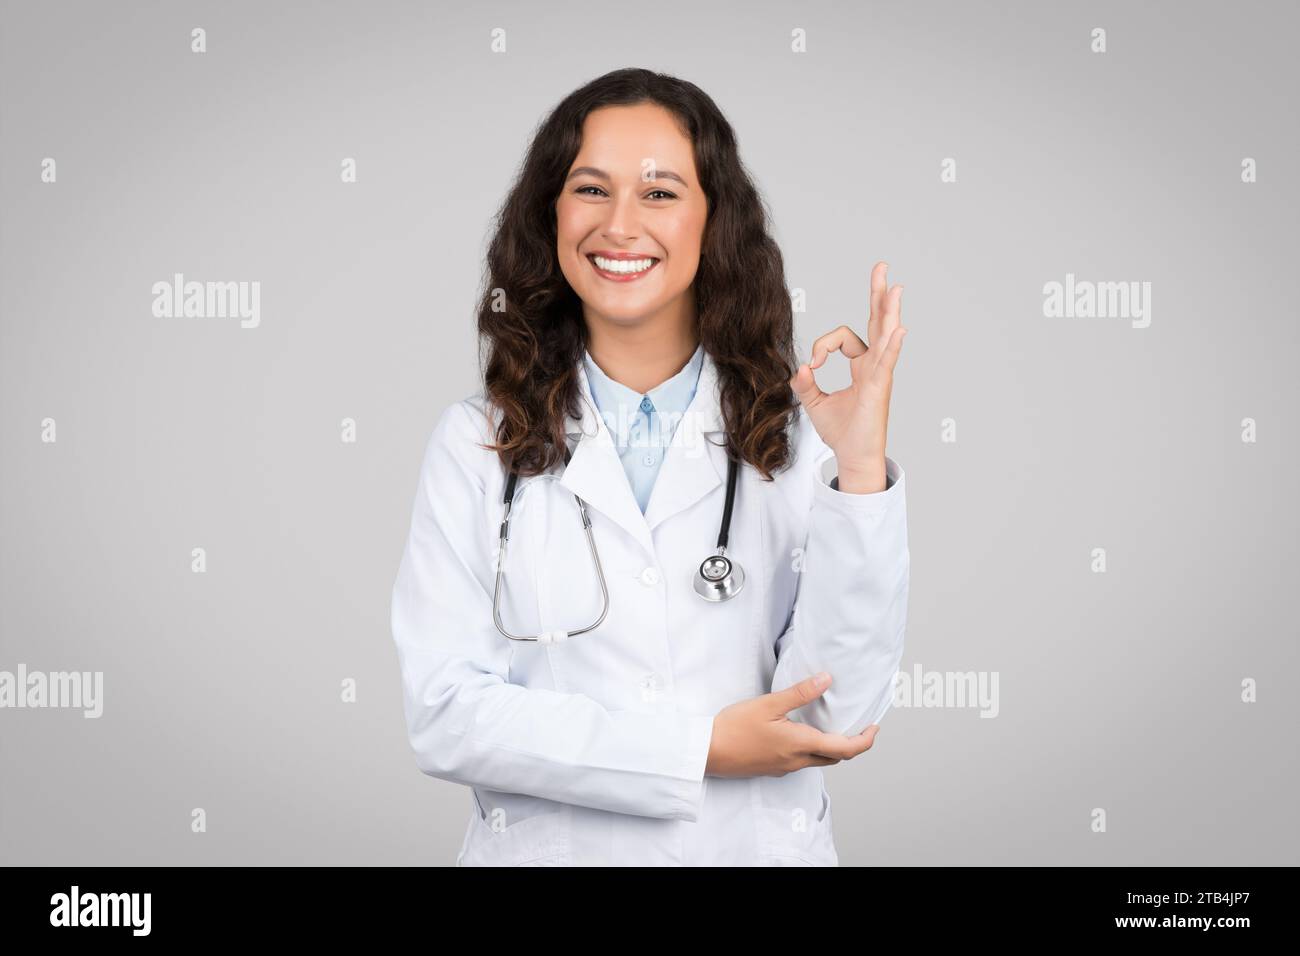 Femme médecin européenne heureuse en manteau blanc faisant signe ok avec la main, debout sur fond gris, souriant à la caméra Banque D'Images